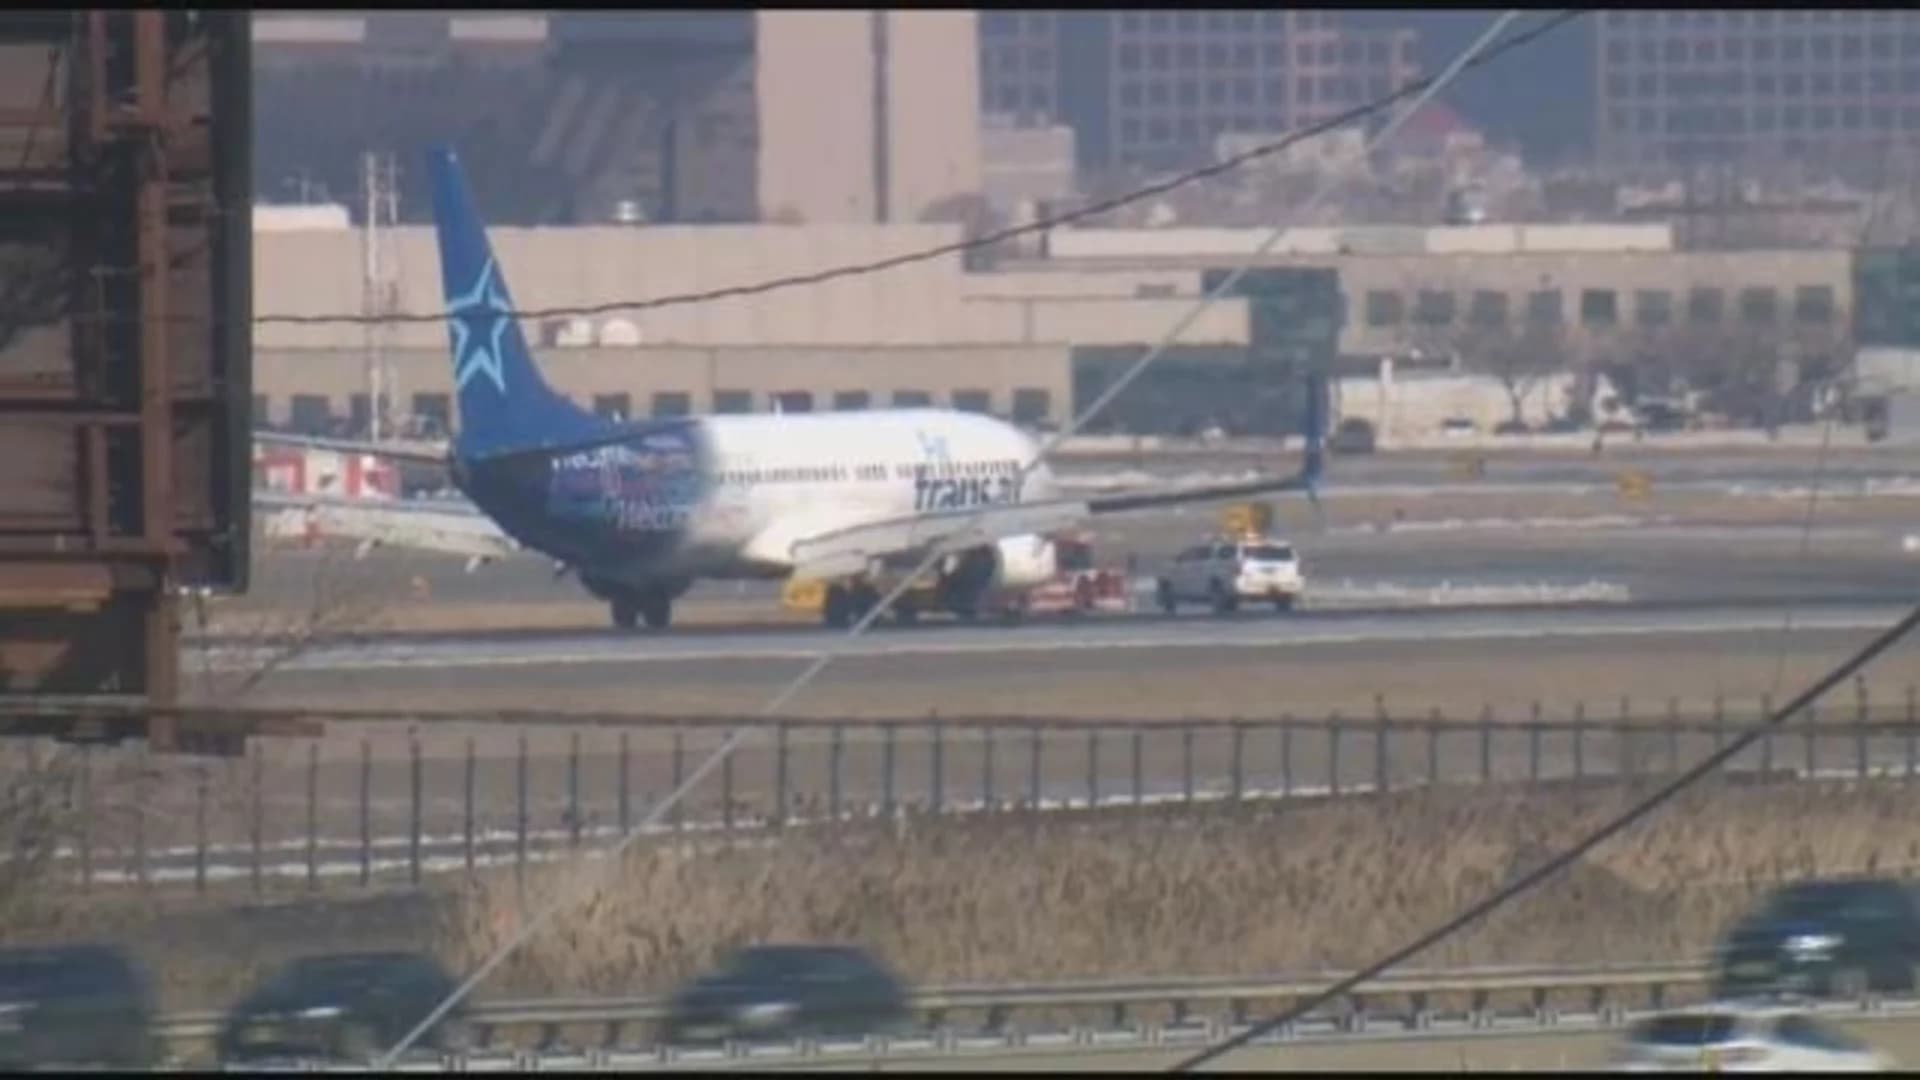 Plane makes emergency landing in Newark, passengers evacuated